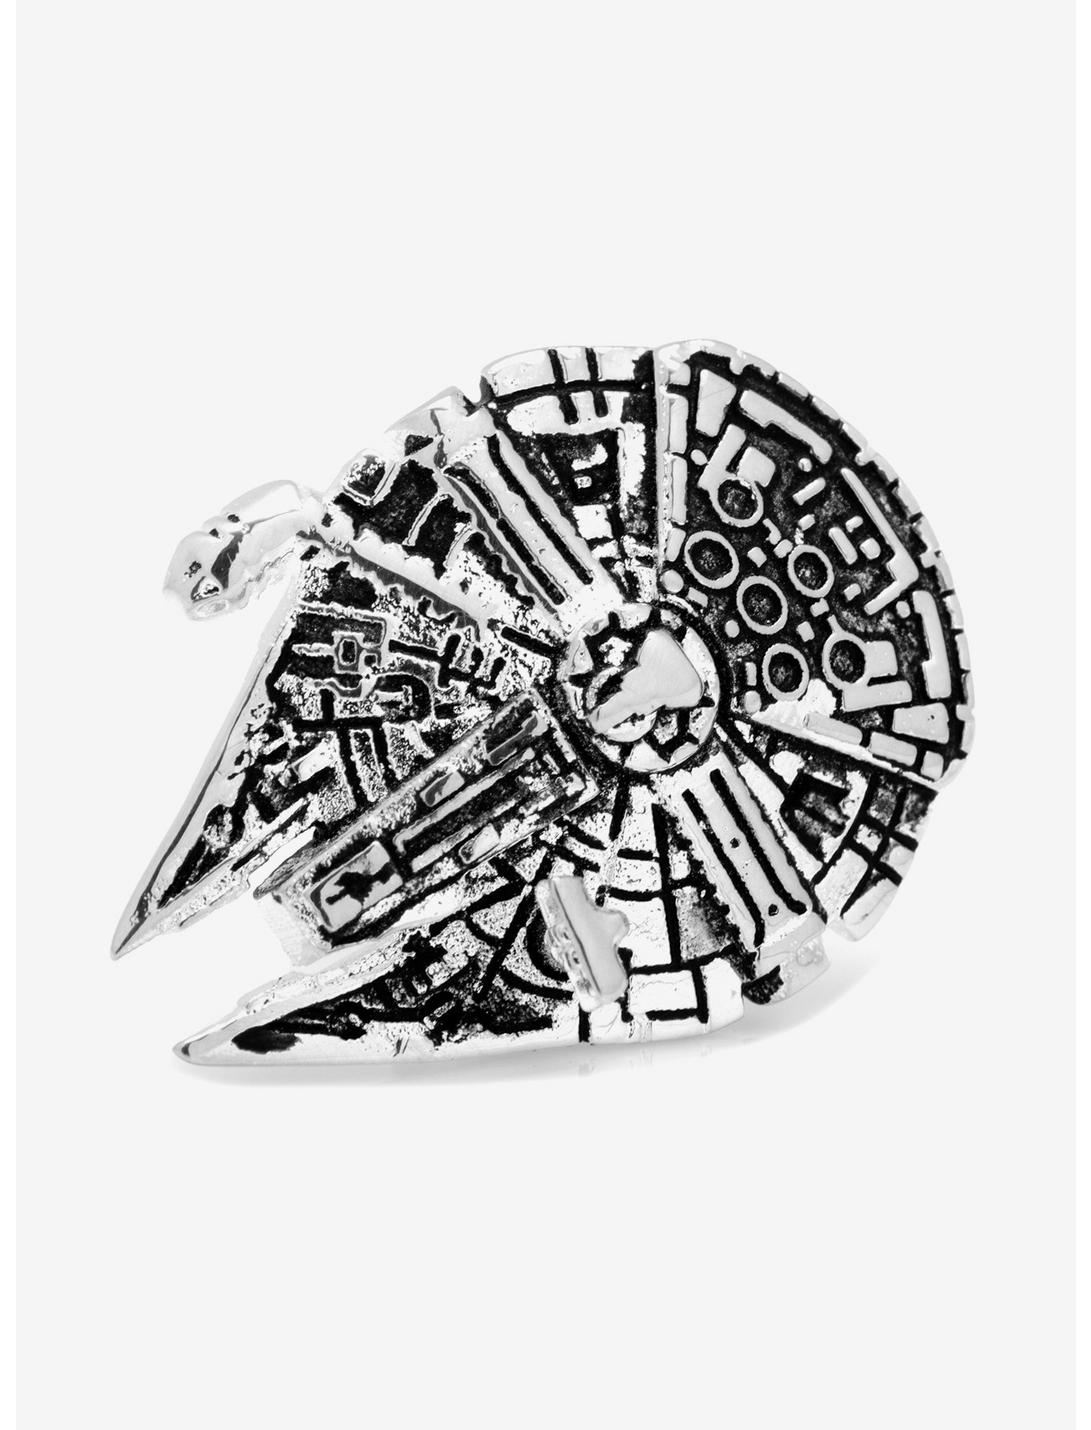 3D Star Wars Millennium Falcon Lapel Pin, , hi-res